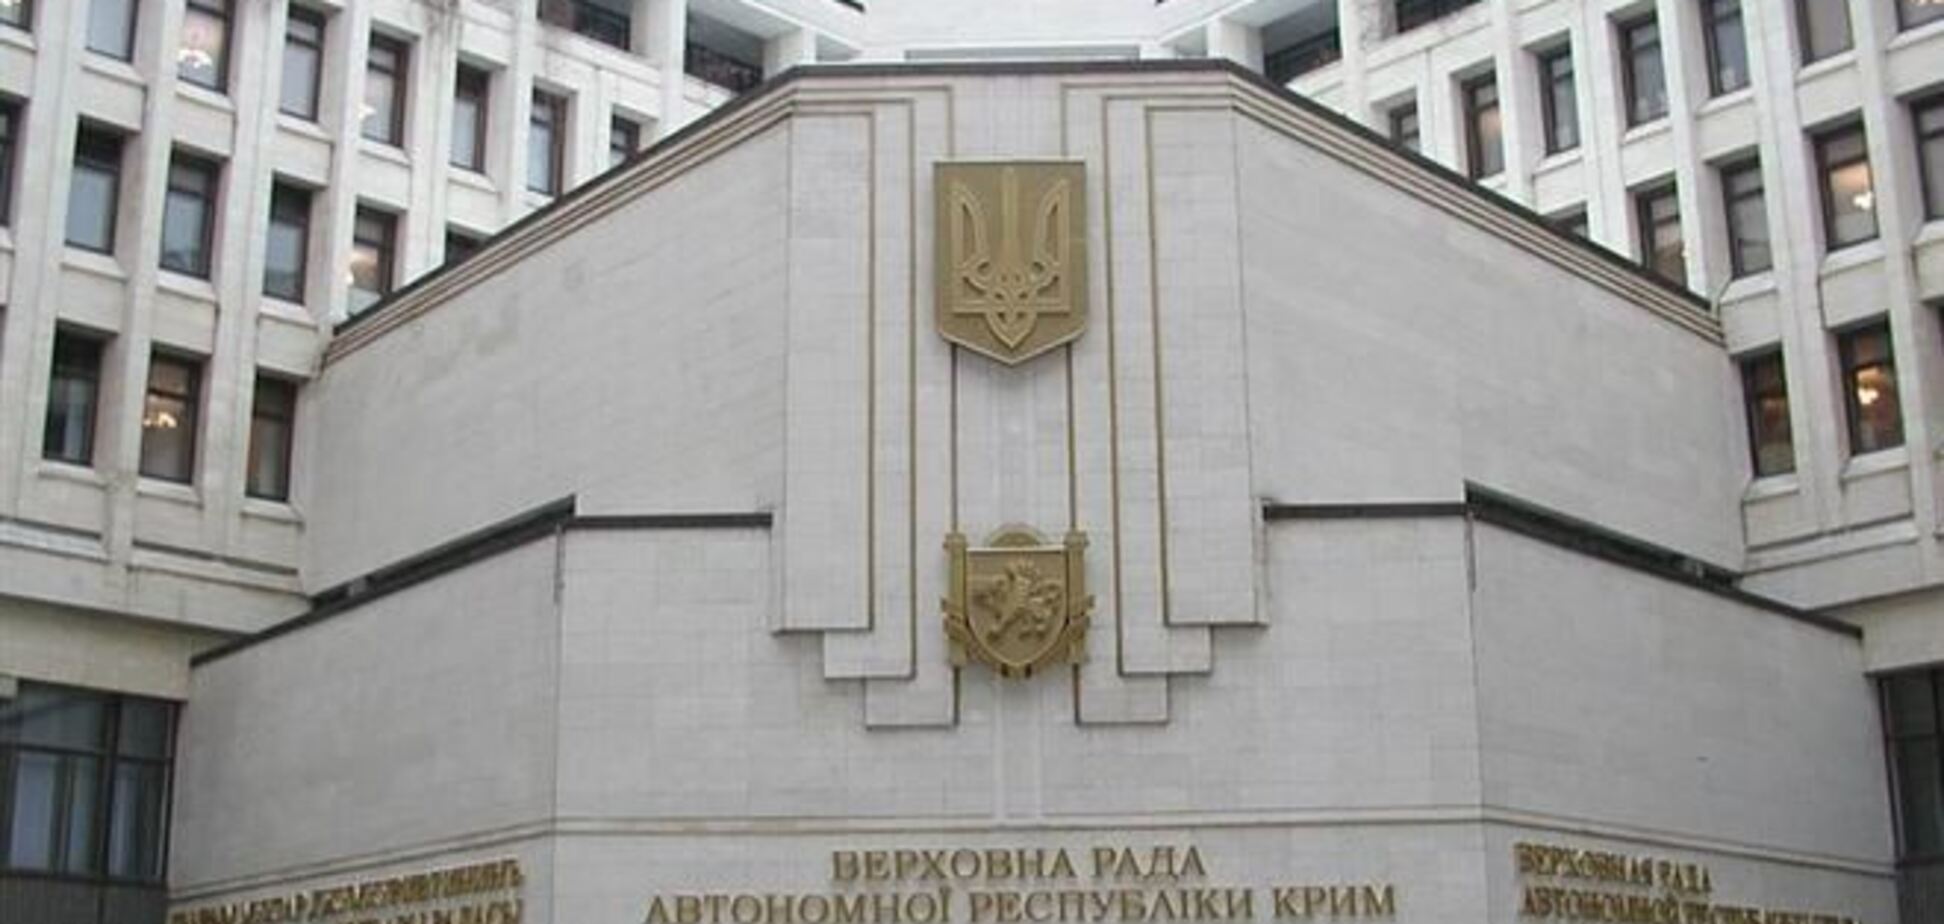  Верховный Совет Крыма захватил российский спецназ – источник